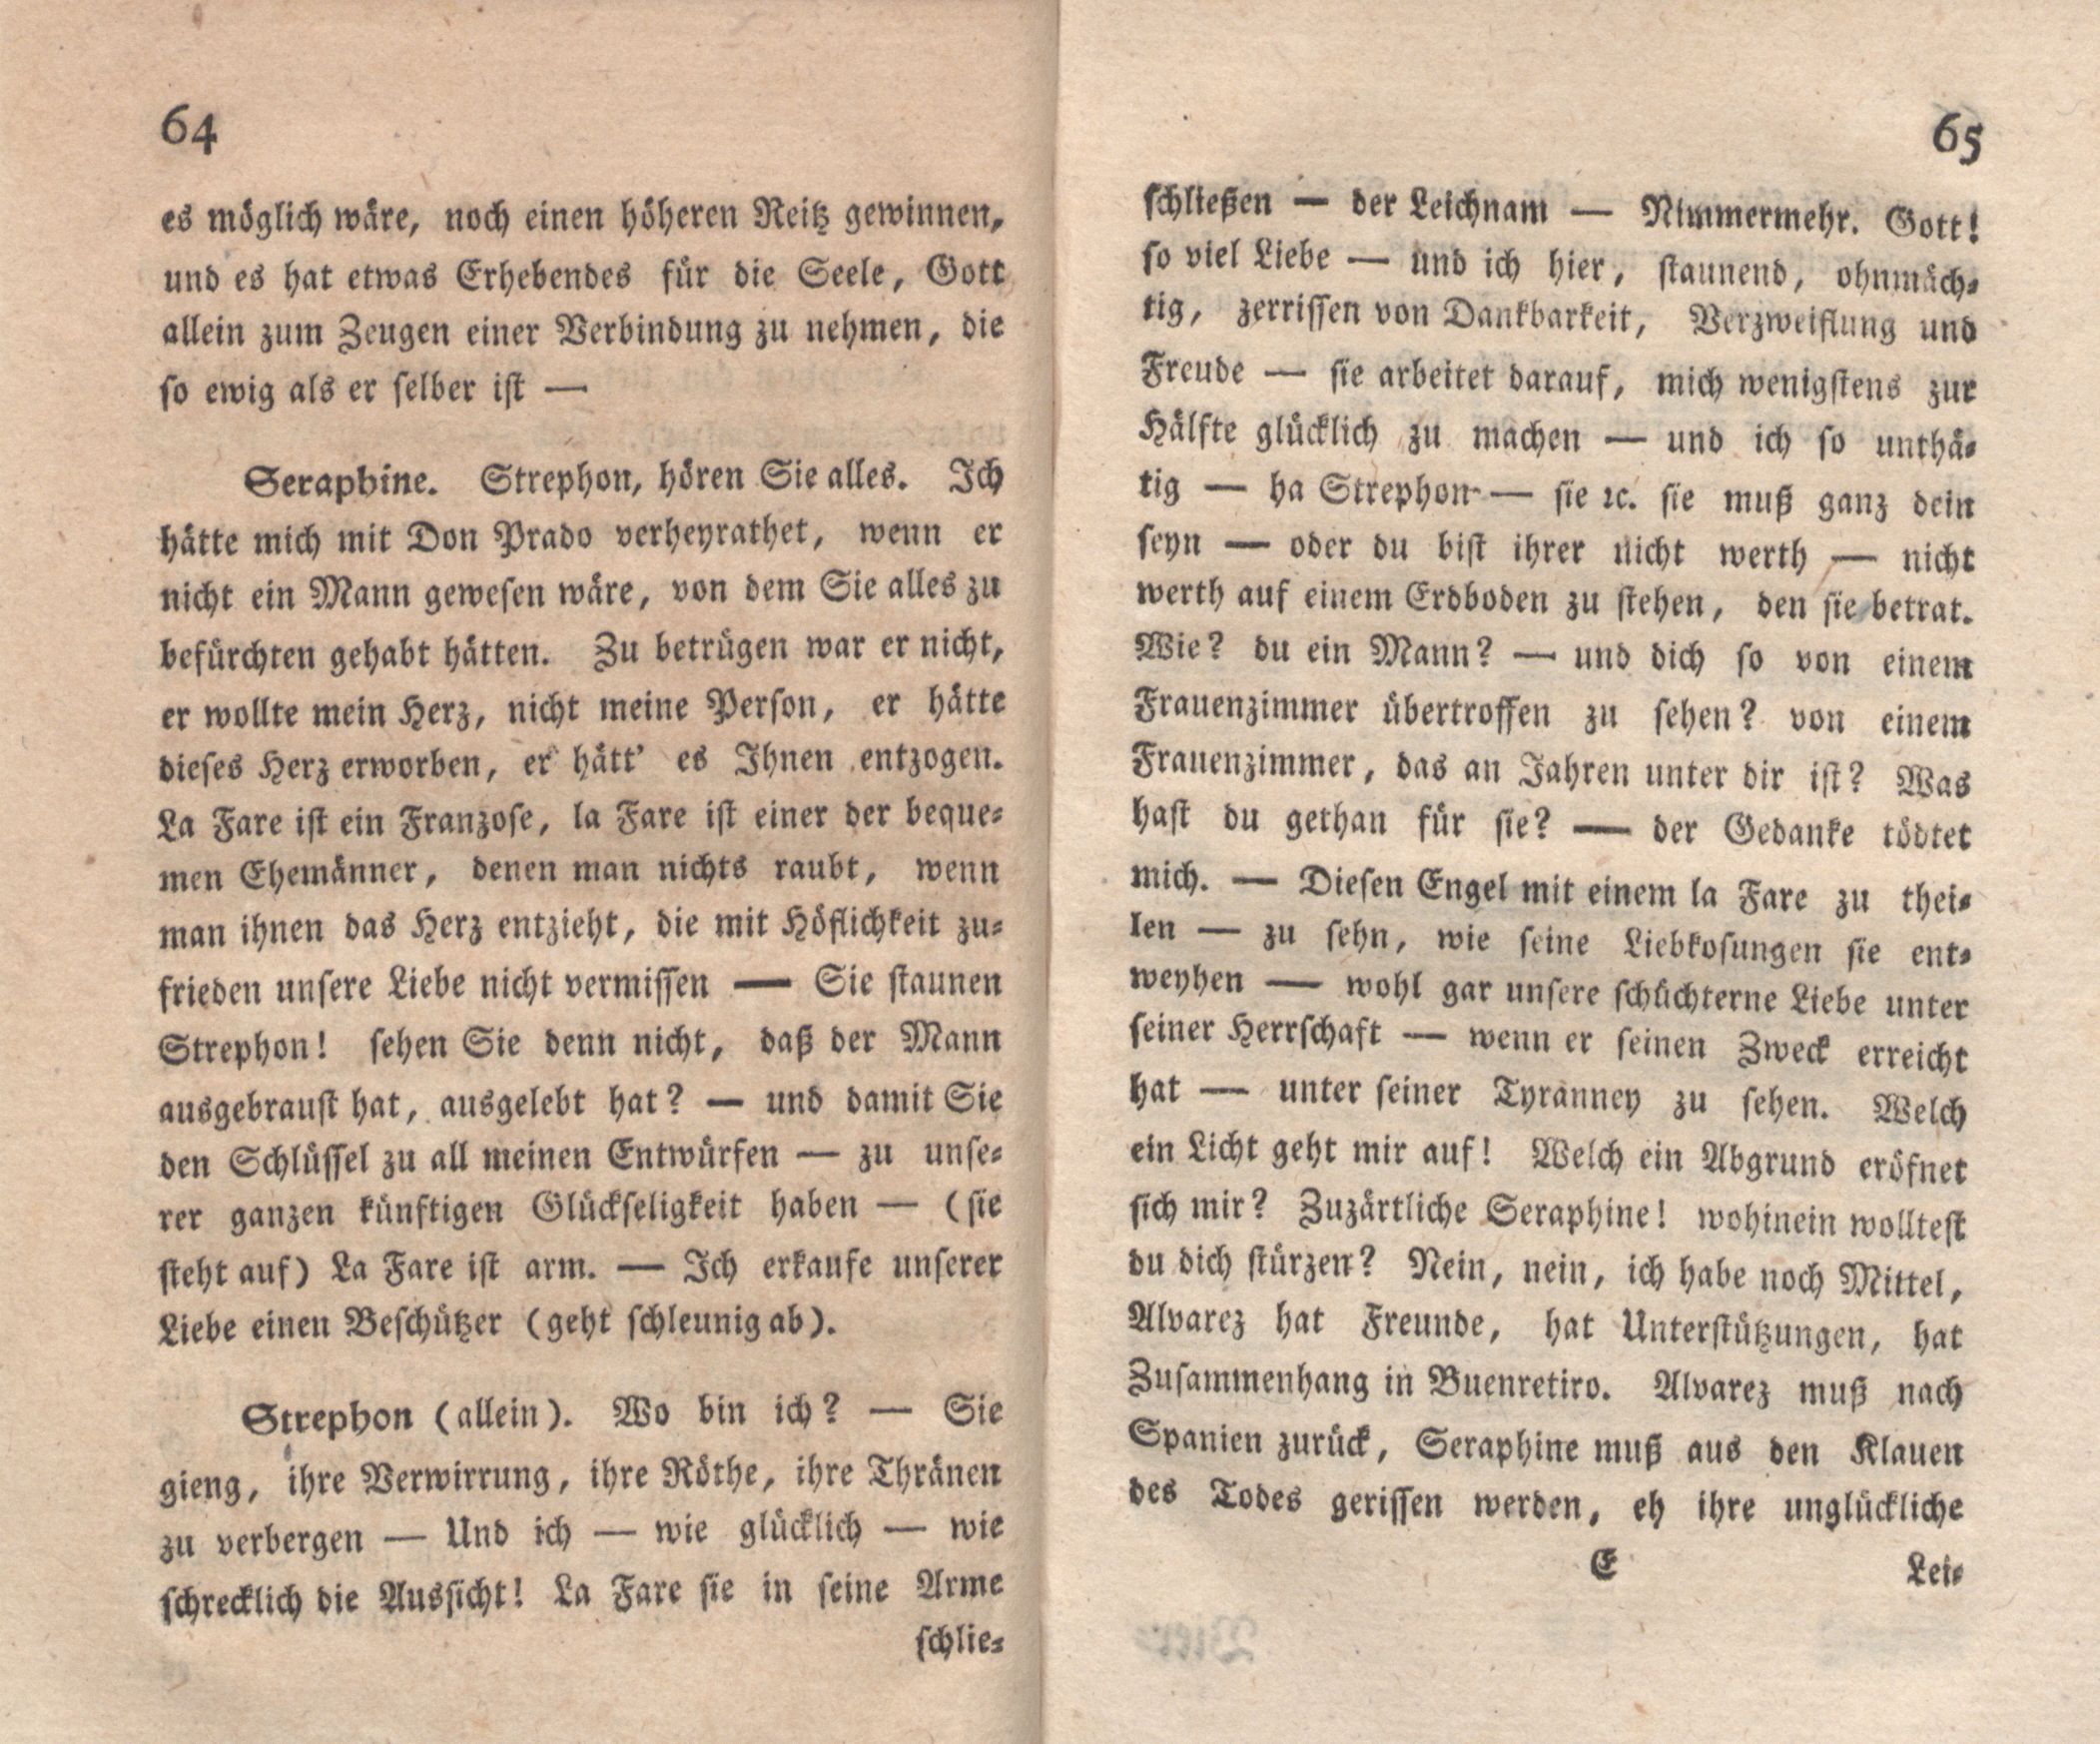 Die Freunde machen den Philosophen (1776) | 34. (64-65) Main body of text